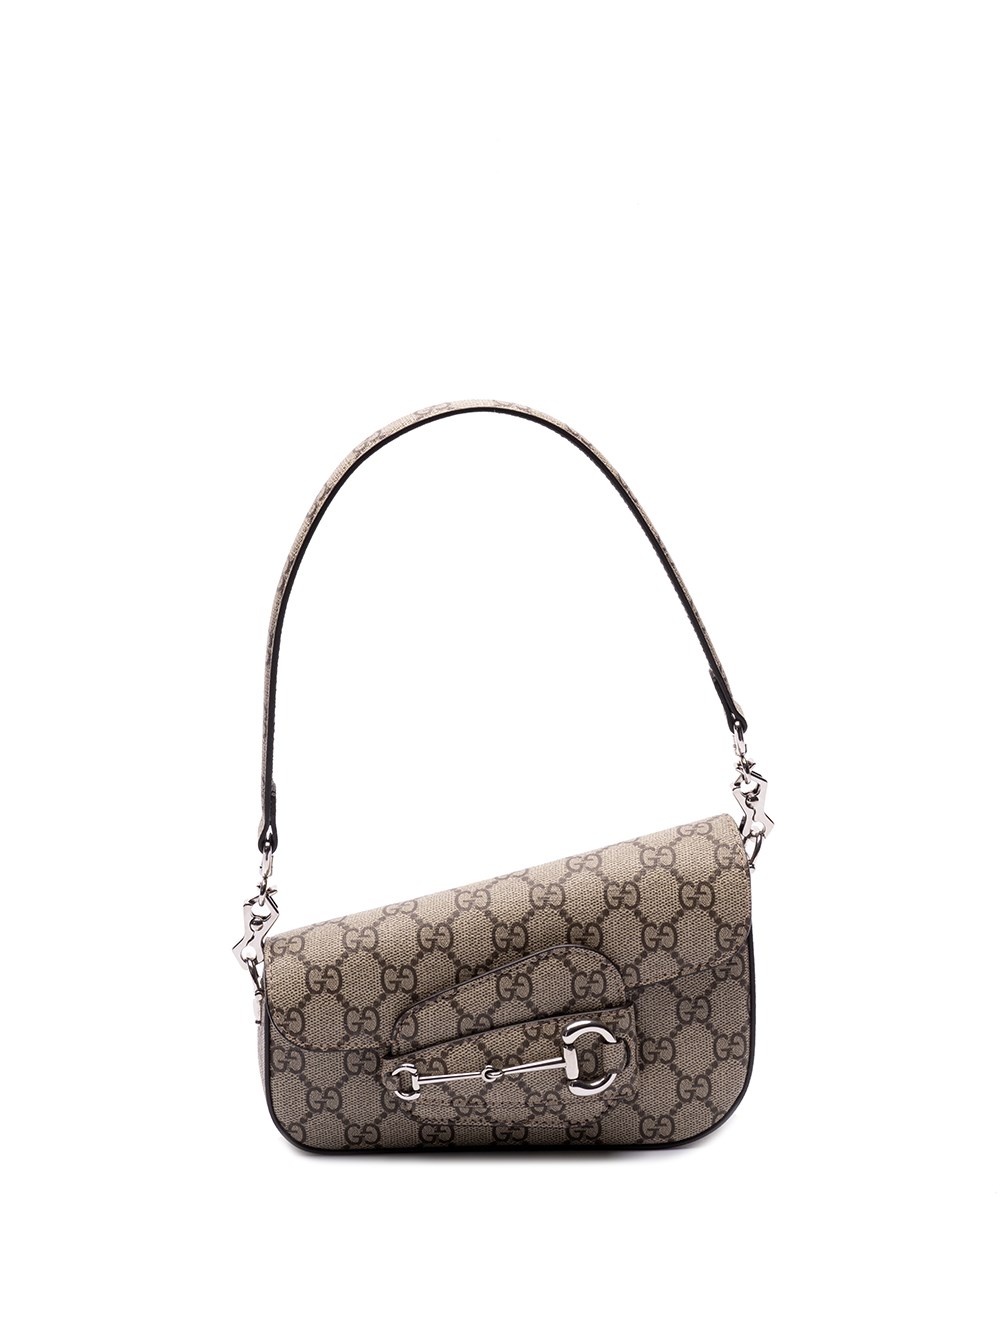 Gucci Horsebit 1955 Shoulder Bag In Beige